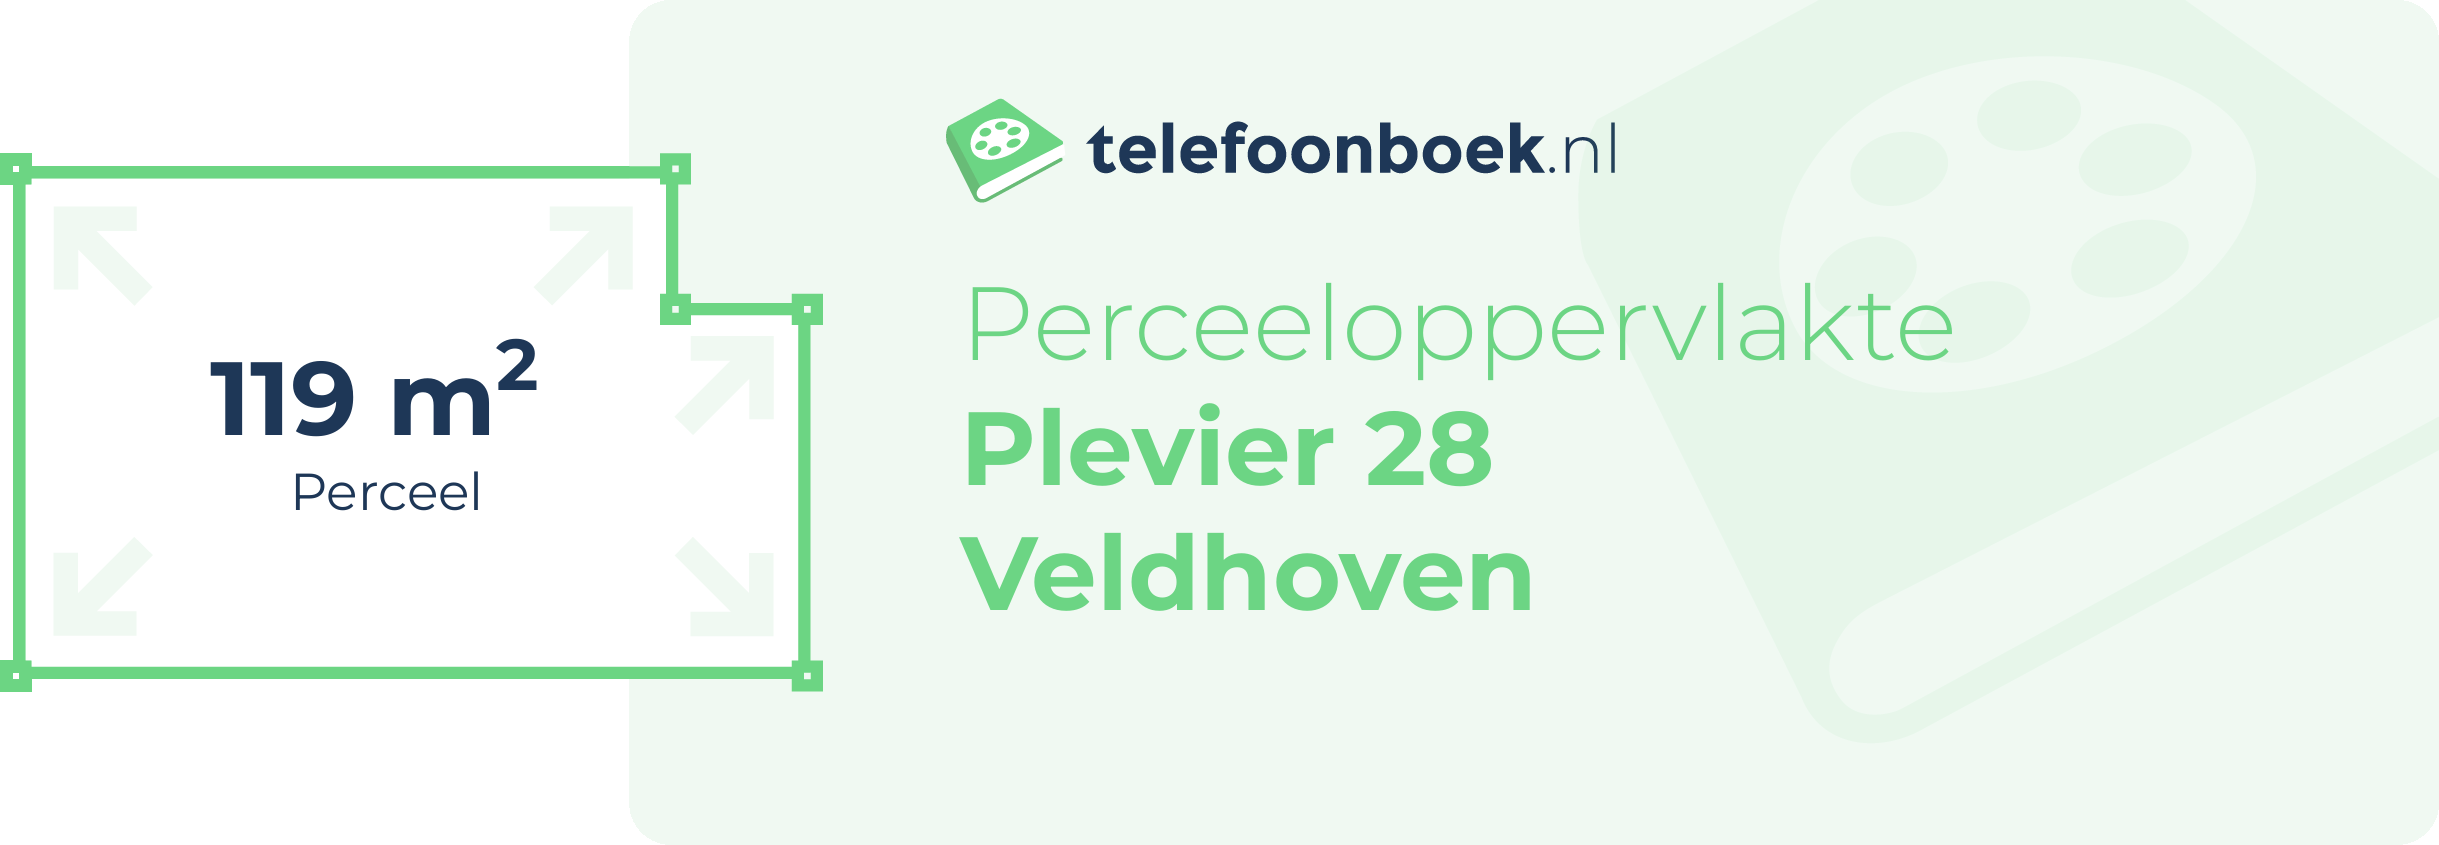 Perceeloppervlakte Plevier 28 Veldhoven